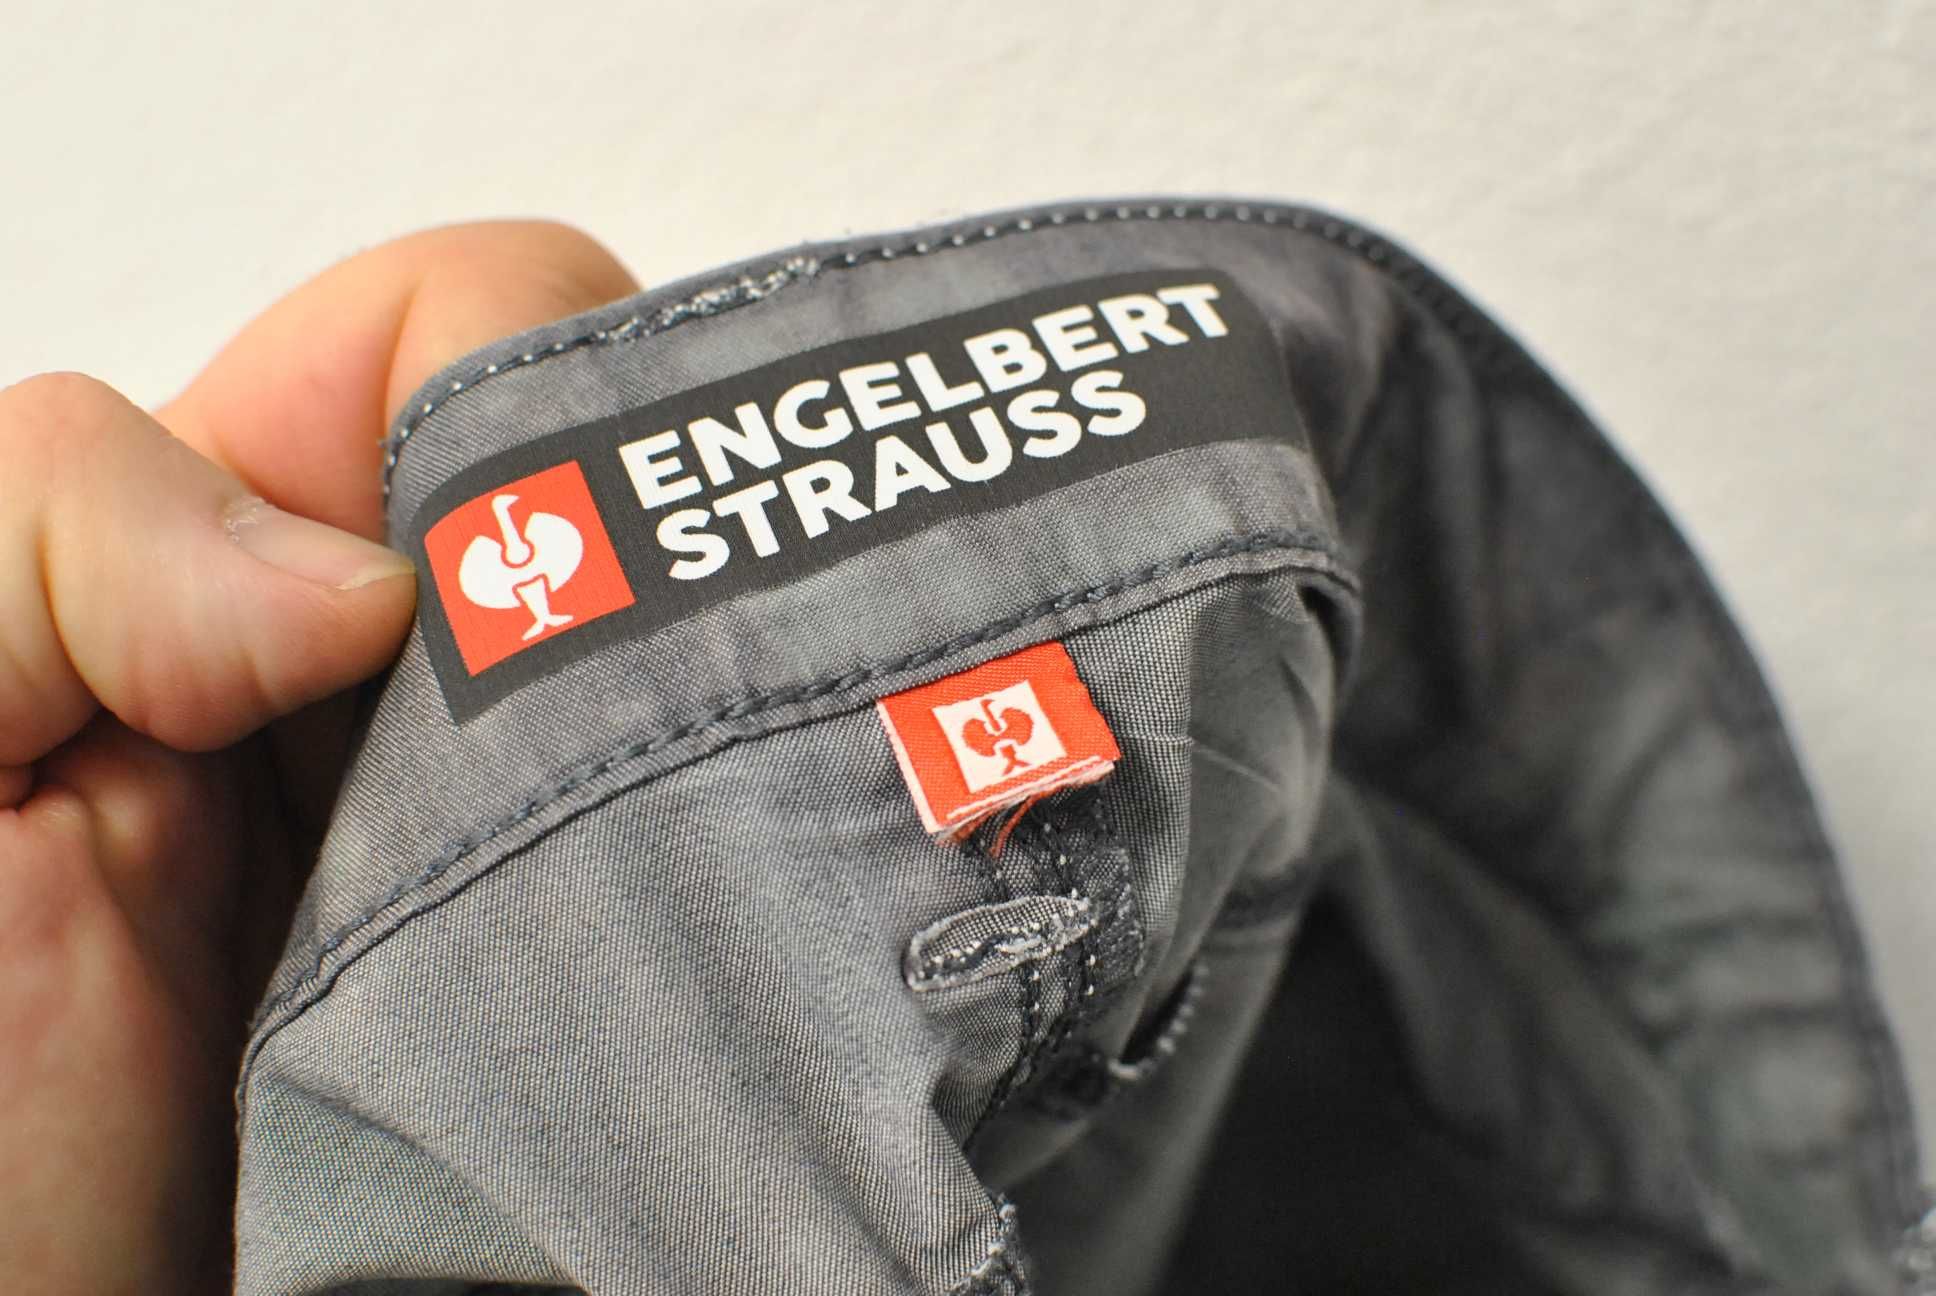 Engelbert Strauss Motion X pantaloin scurt marimea 54  (2153)